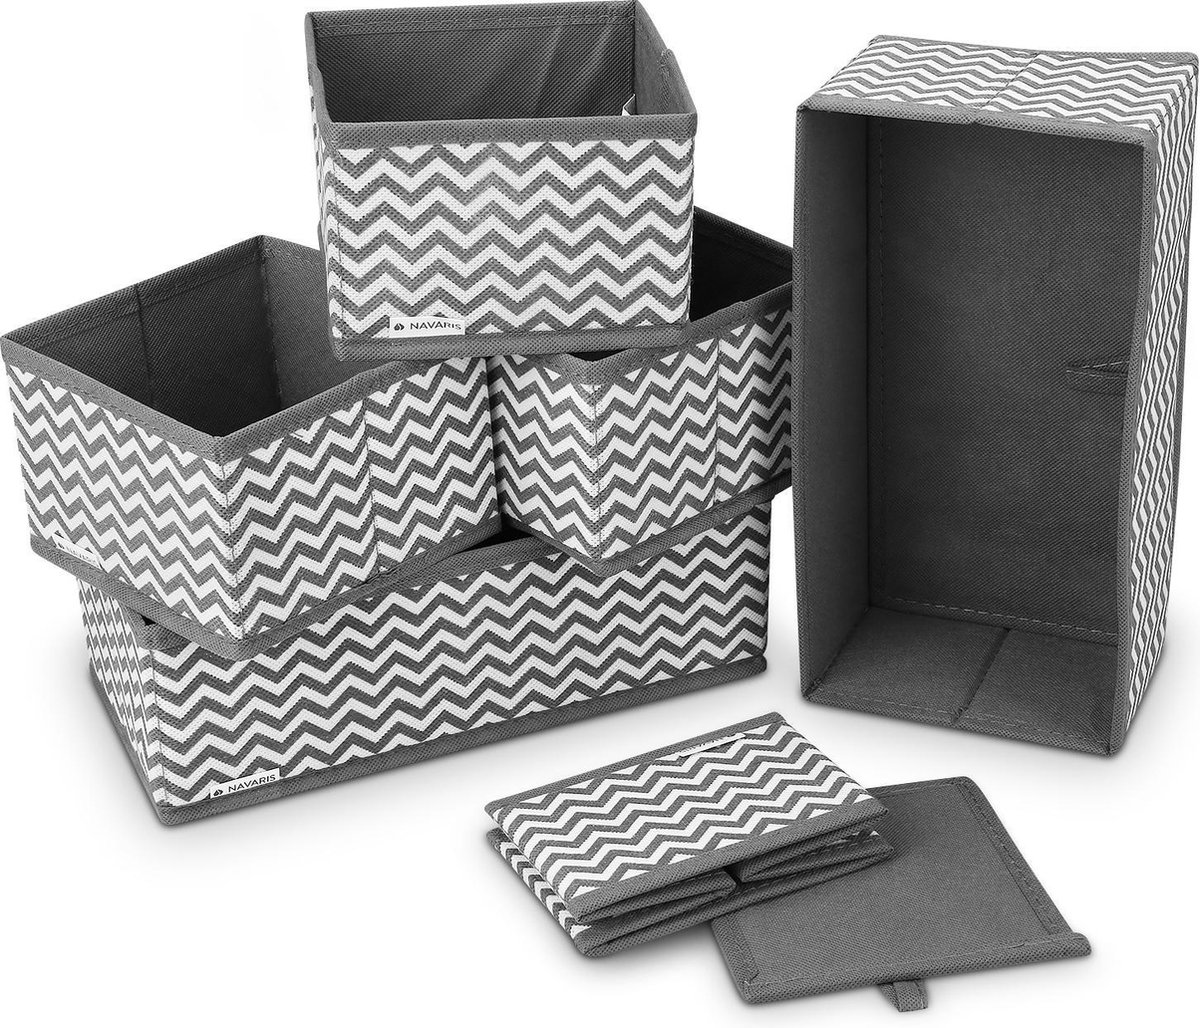 Navaris stoffen opbergboxen voor kleding - Set van 6 opvouwbare opbergmanden - Voor speelgoed, ondergoed of sokken - Opbergset van 6 stuks - Grijs/wit